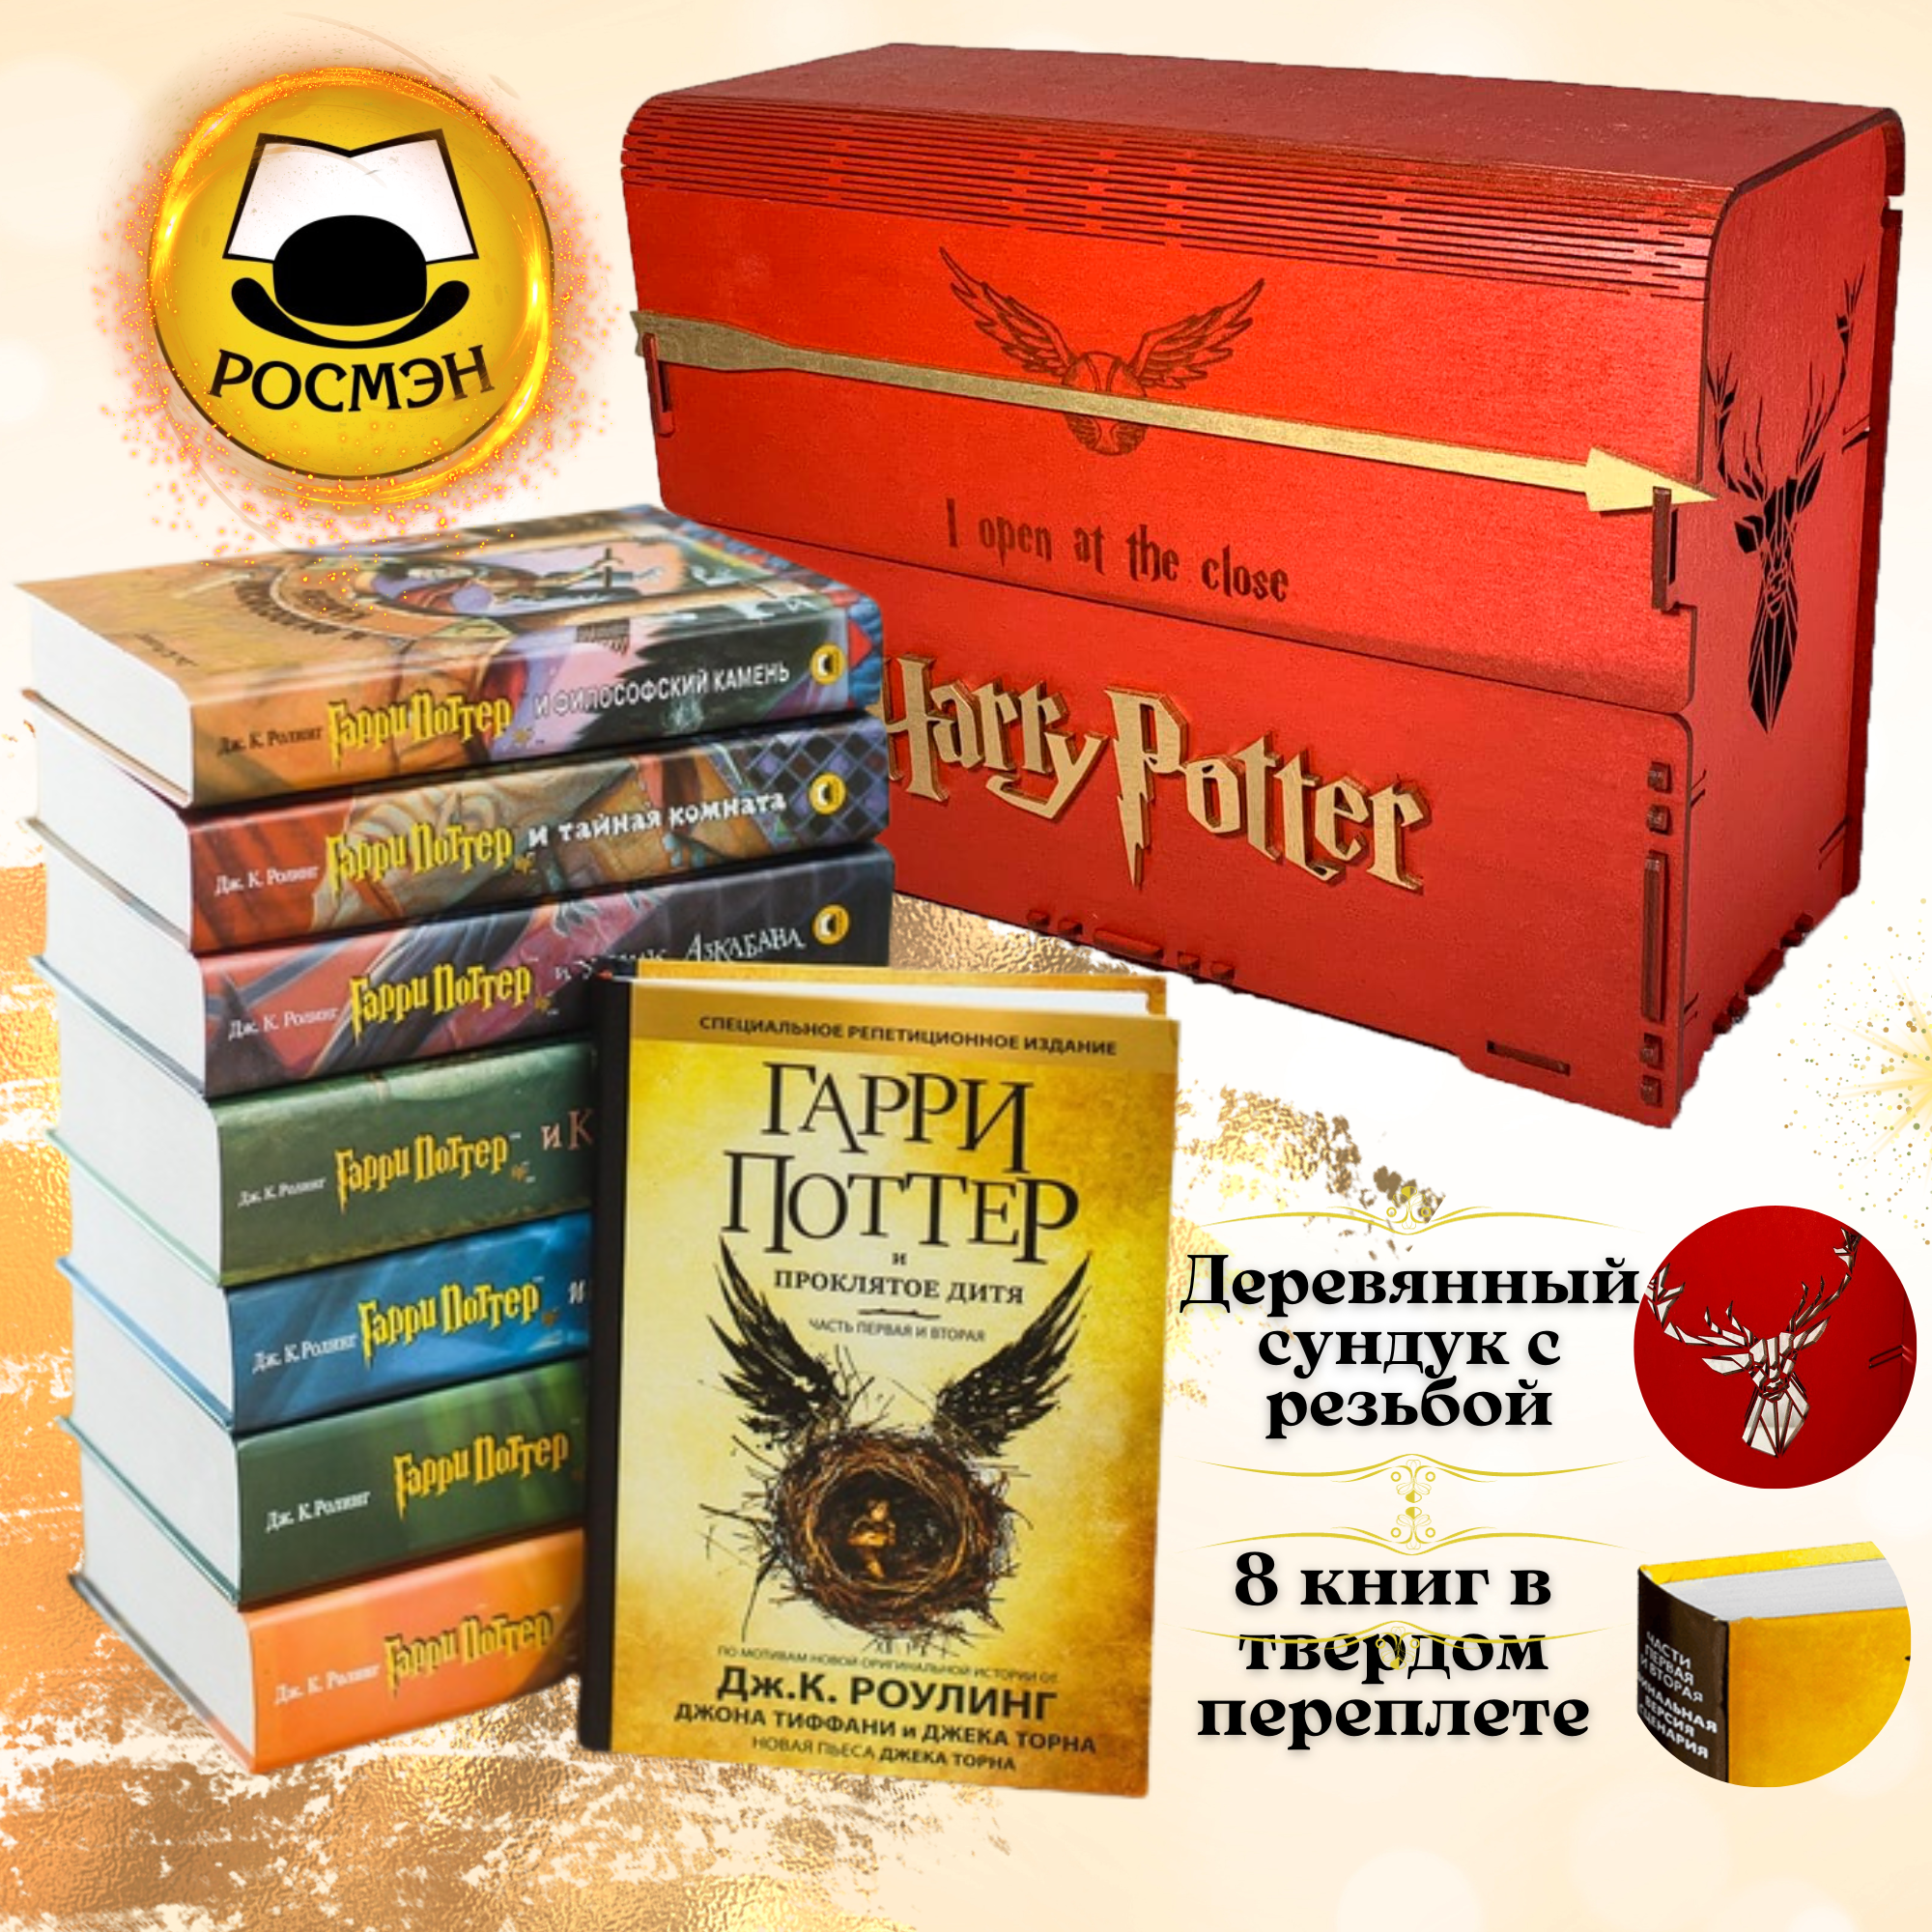 Комплект из 7 книг о Гарри Поттер и Гарри Поттер Проклятое Дитя в красном деревянном сундуке